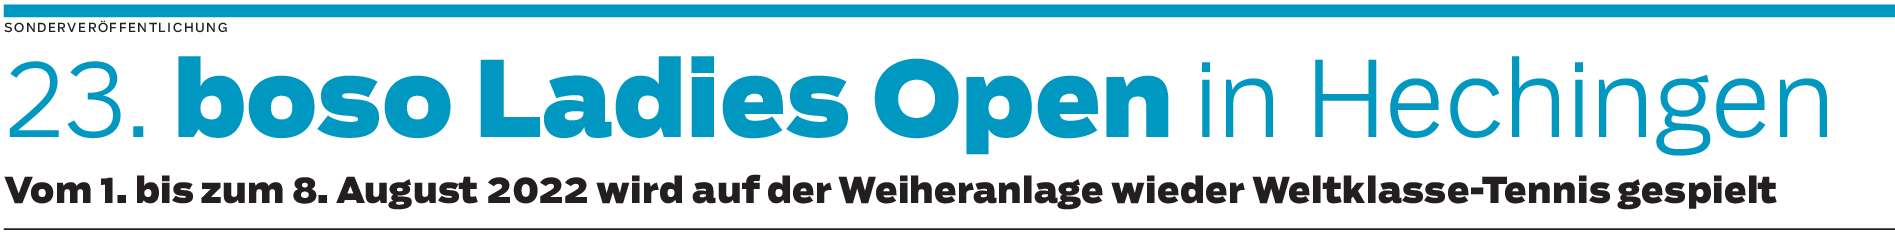 Plan B als steter Begleiter bei der Planung der boso Ladies Open 2022 in Hechingen 